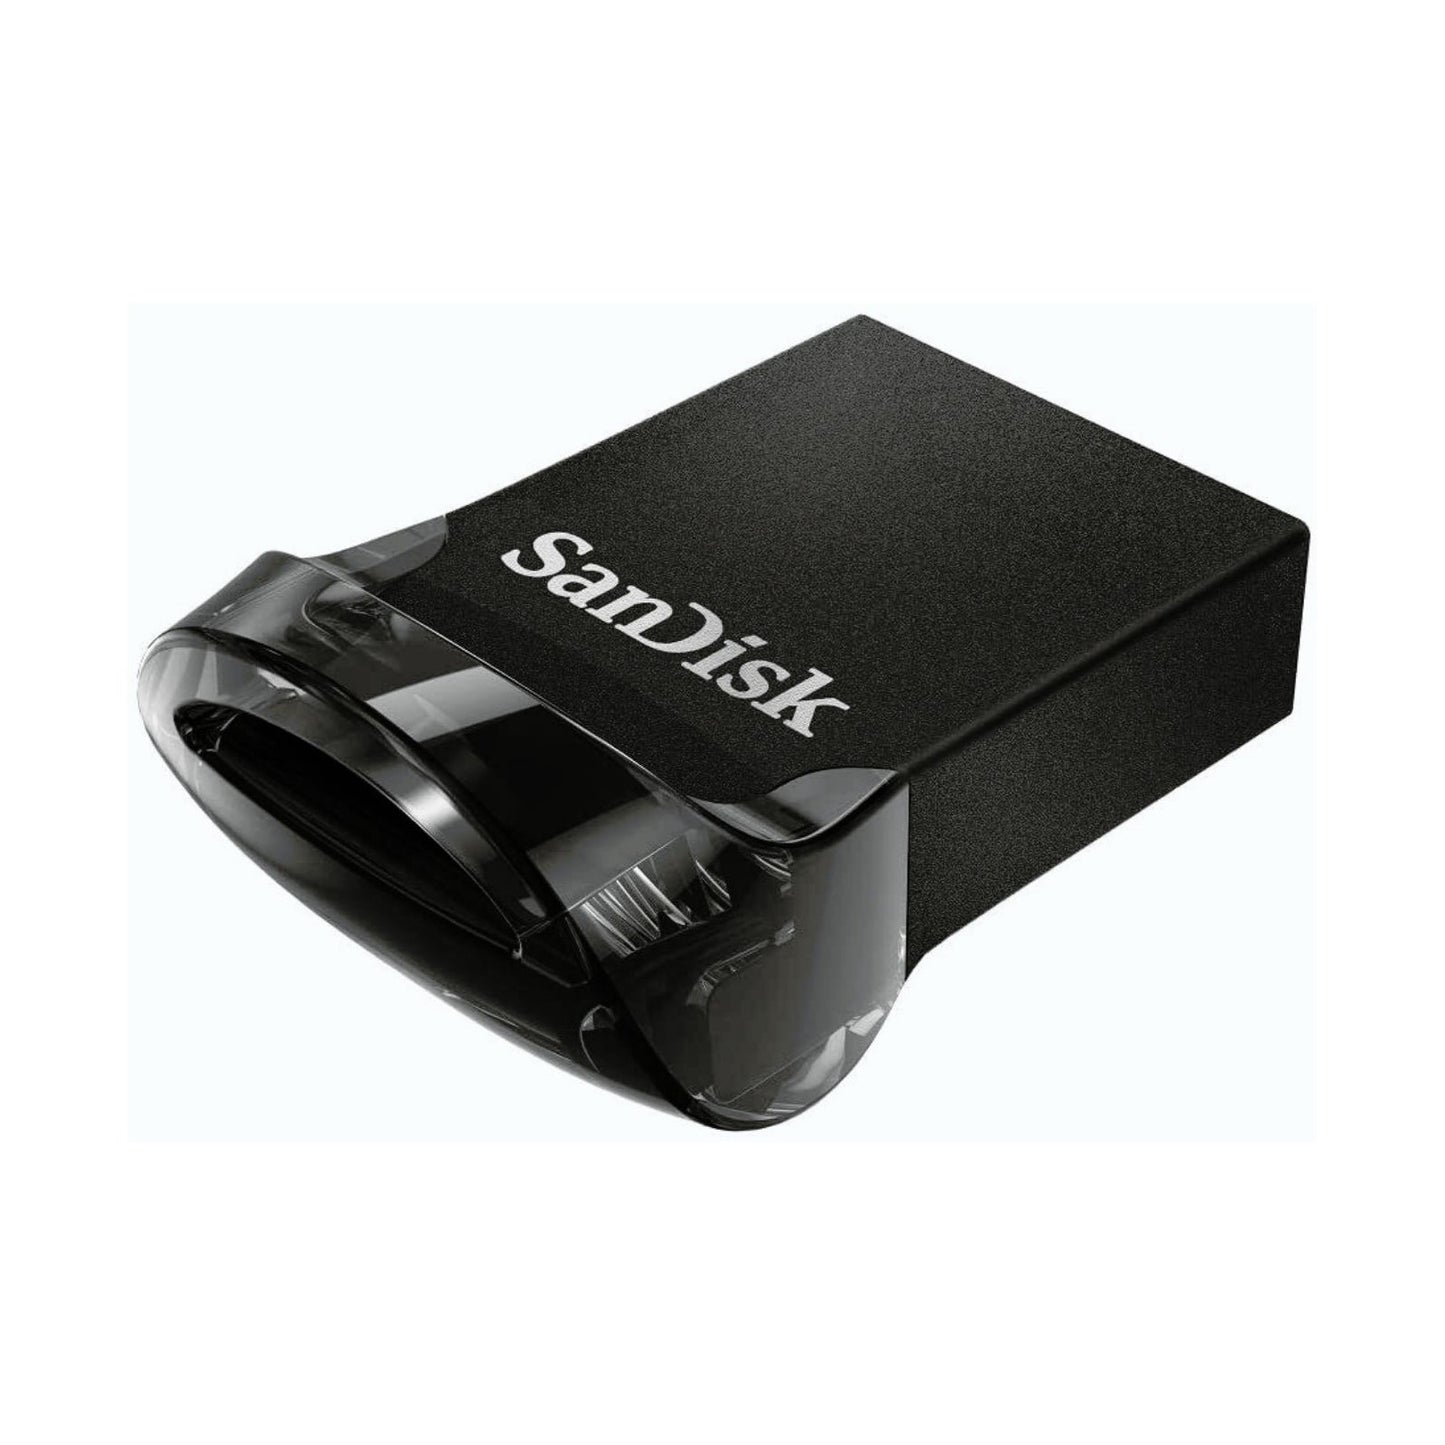 Sandisk Ultra Fit 16GB 130MB/S USB 3.1 Flash Drive Memory Stick Pen PC MAC